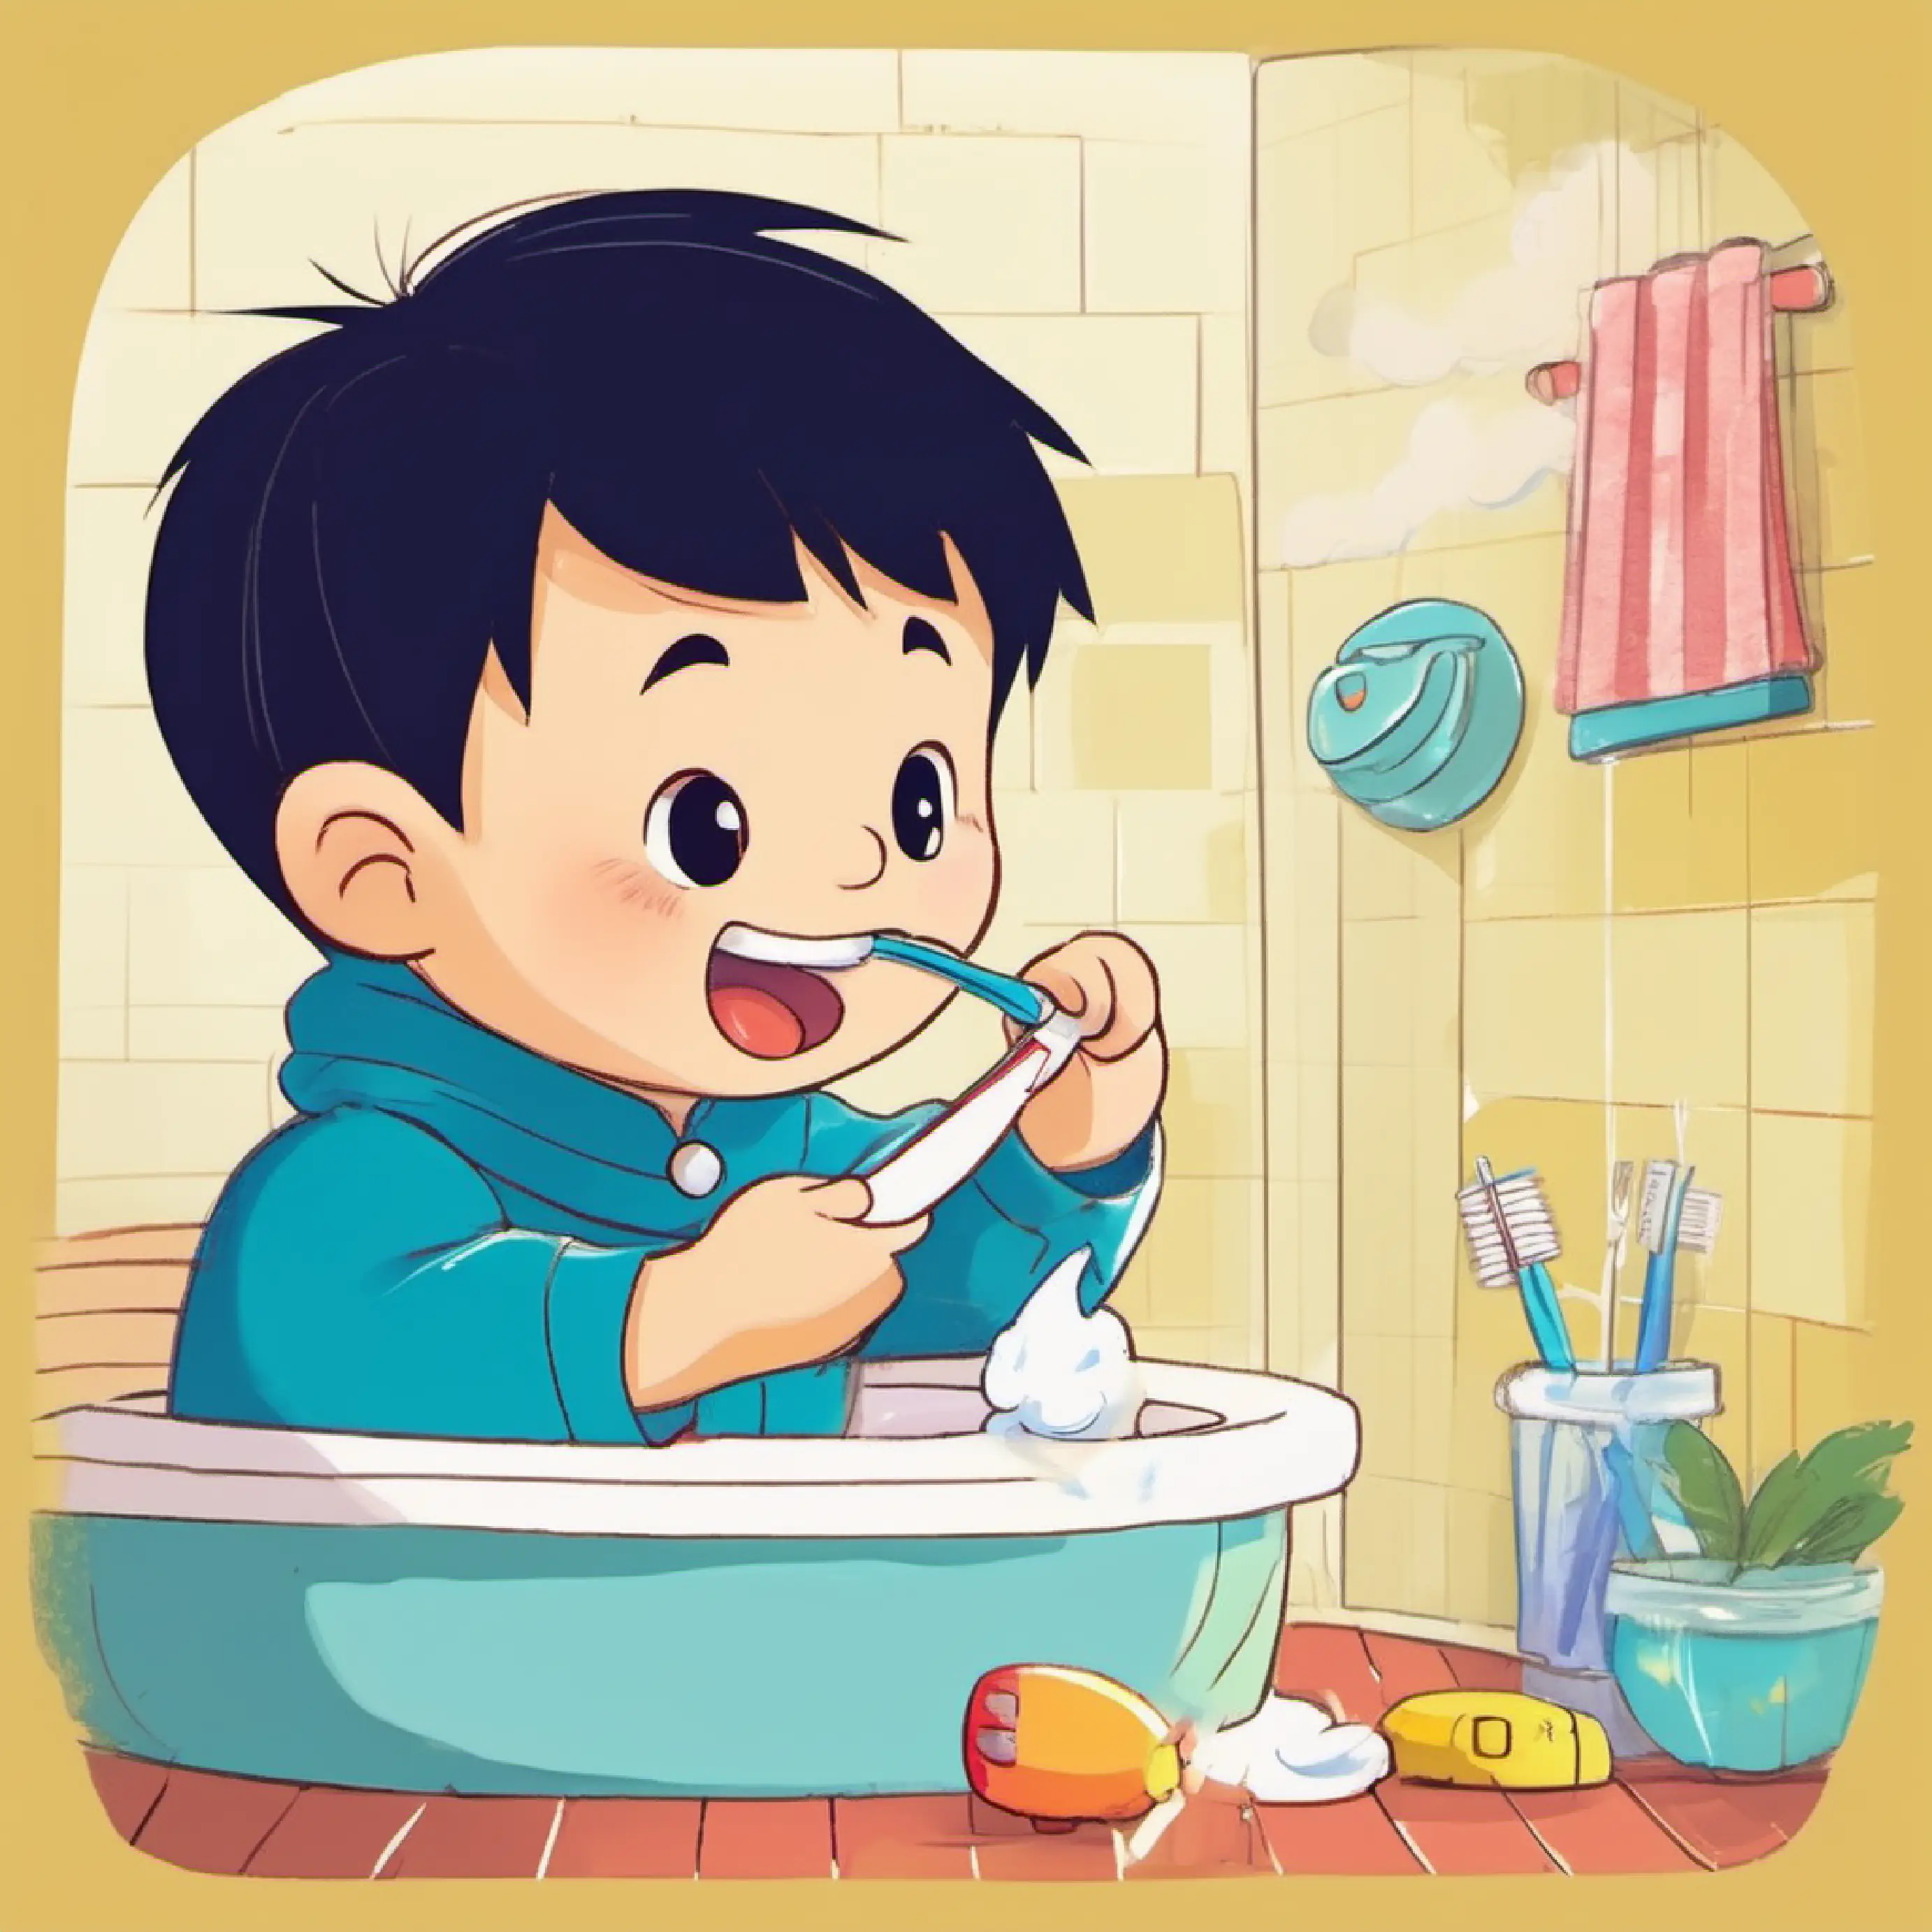 Xiao Zhu Zhu brushing his teeth.